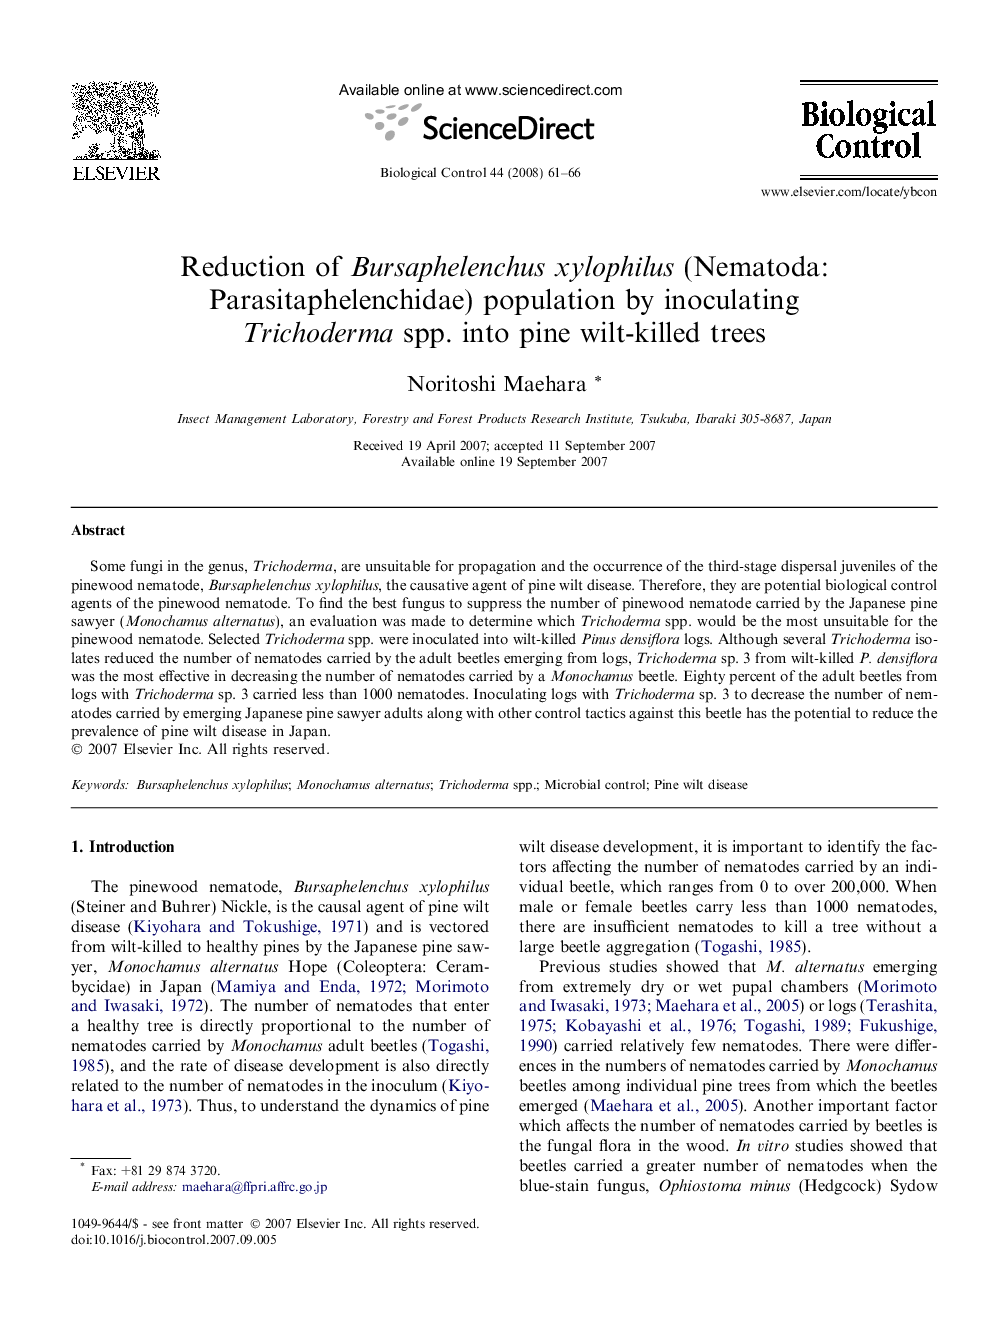 Reduction of Bursaphelenchus xylophilus (Nematoda: Parasitaphelenchidae) population by inoculating Trichoderma spp. into pine wilt-killed trees